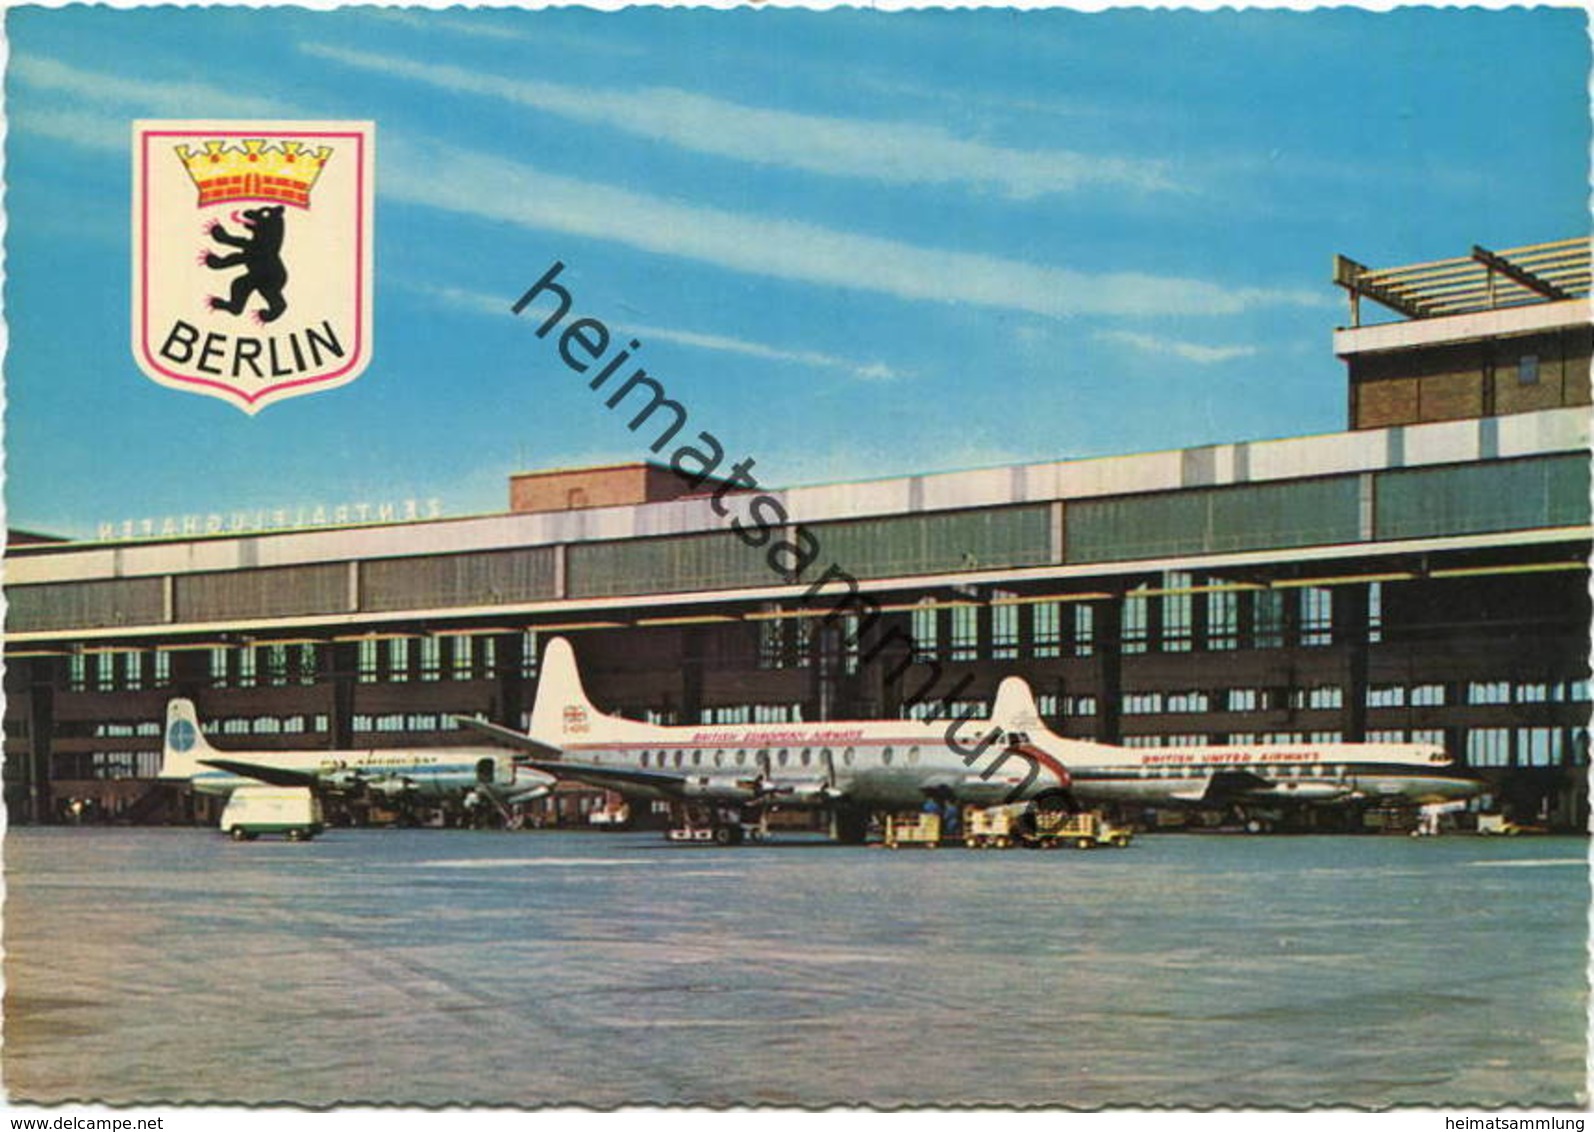 Berlin Flughafen Tempelhof - AK Grossformat - Verlag Krüger - Tempelhof